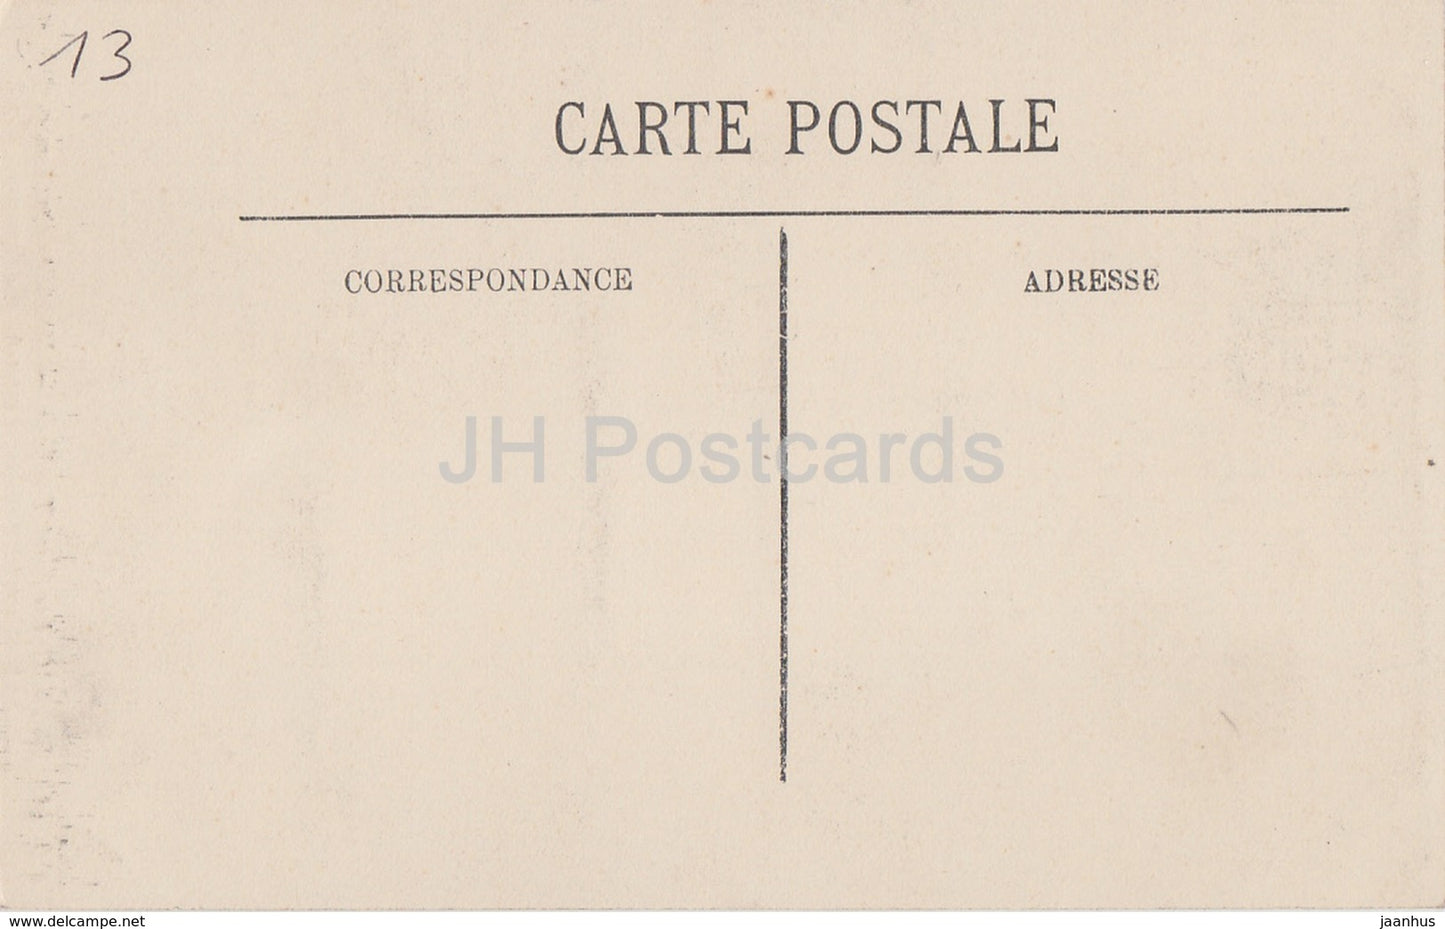 Arles - Cloitre Saint Trophime - Medaillon aux Armes de Frederic Barberousse - 129 - old postcard - France - unused